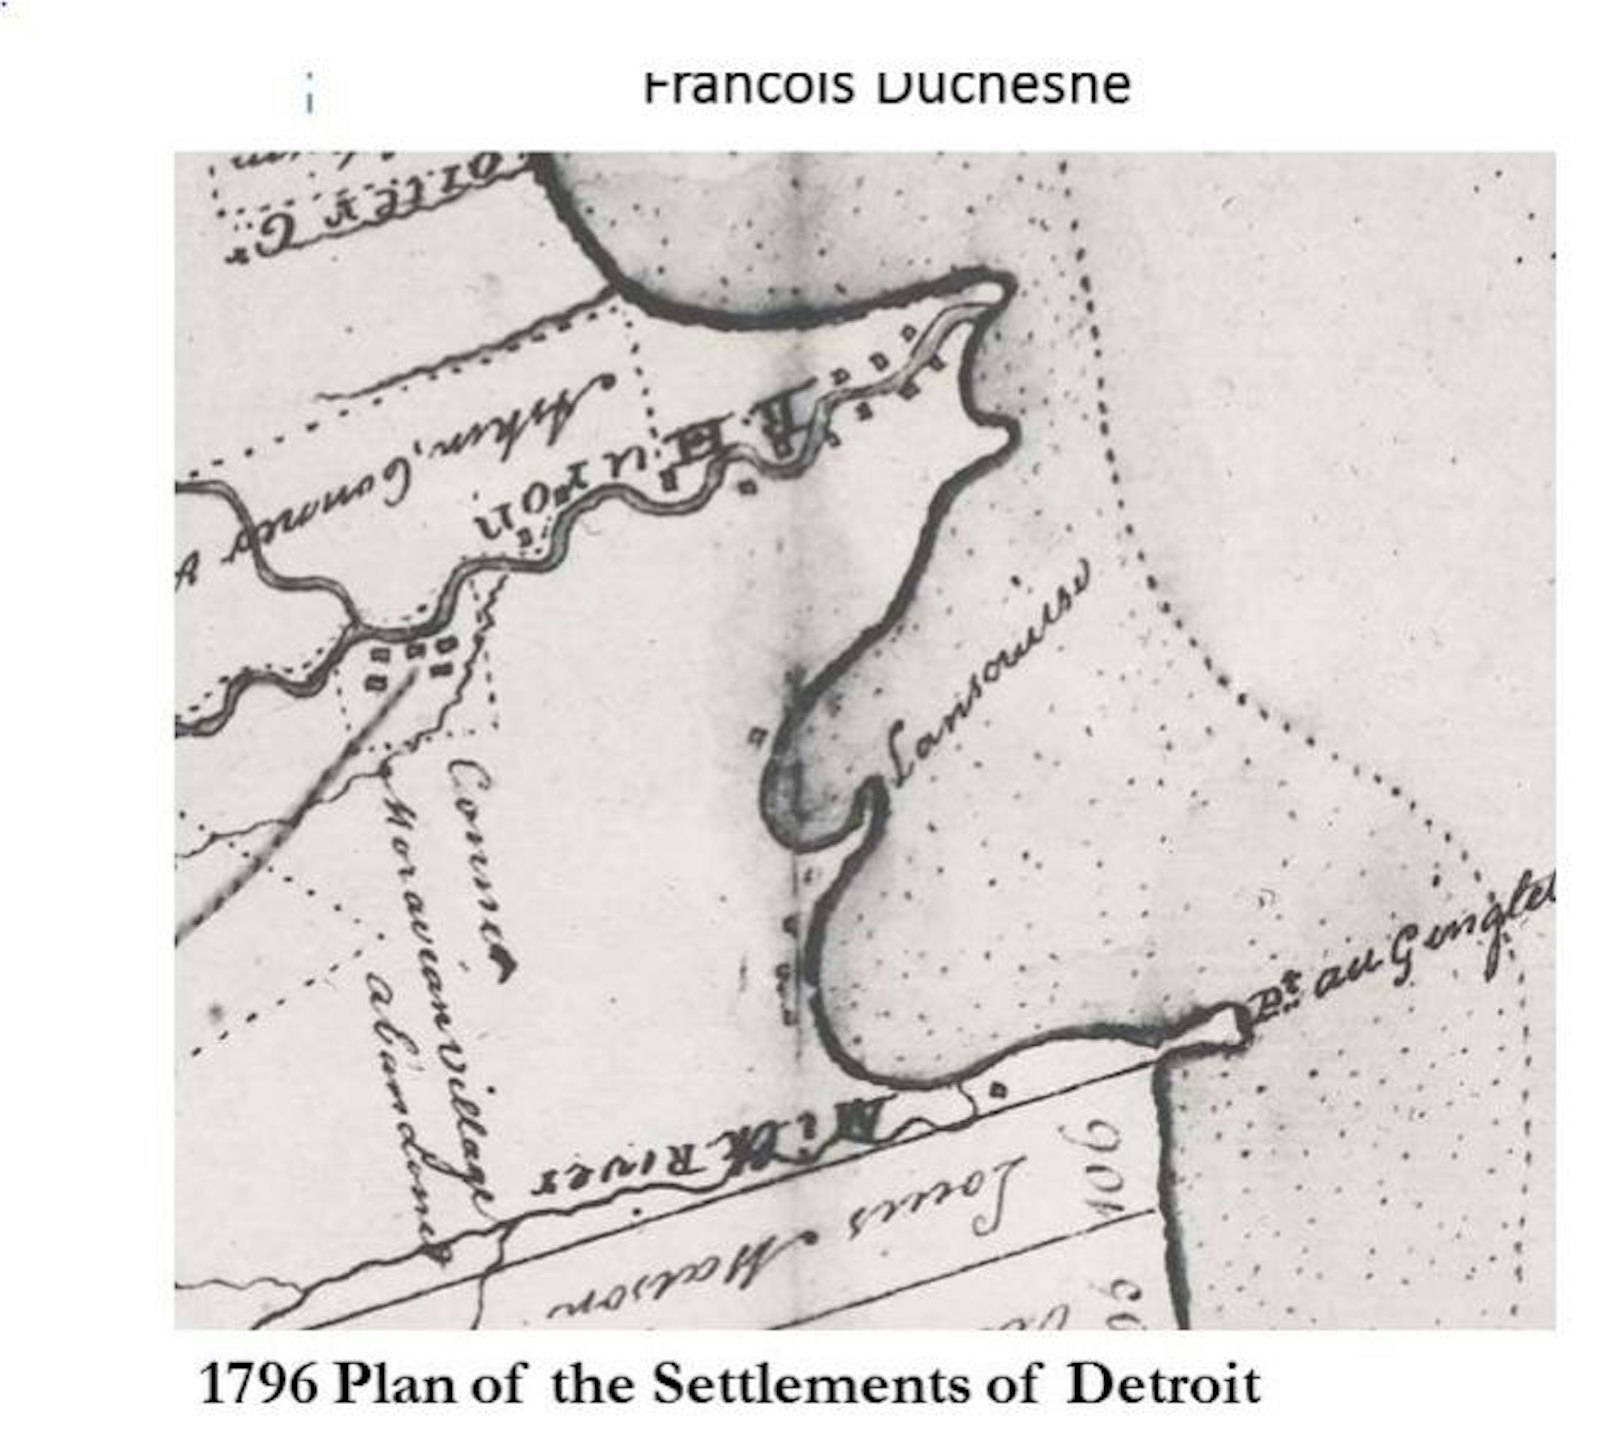 La "lengua" de tierra que sobresale de la costa del lago St. Clair, donde los historiadores creen que se encontraba la Misión de St. Felicity. La construcción de la iglesia en la "lengua" facilitó el acceso de los barcos. Sin embargo, en la década de 1850, la lengua ya no aparecía en la mayoría de los mapas. (Cortesía del condado de Macomb)